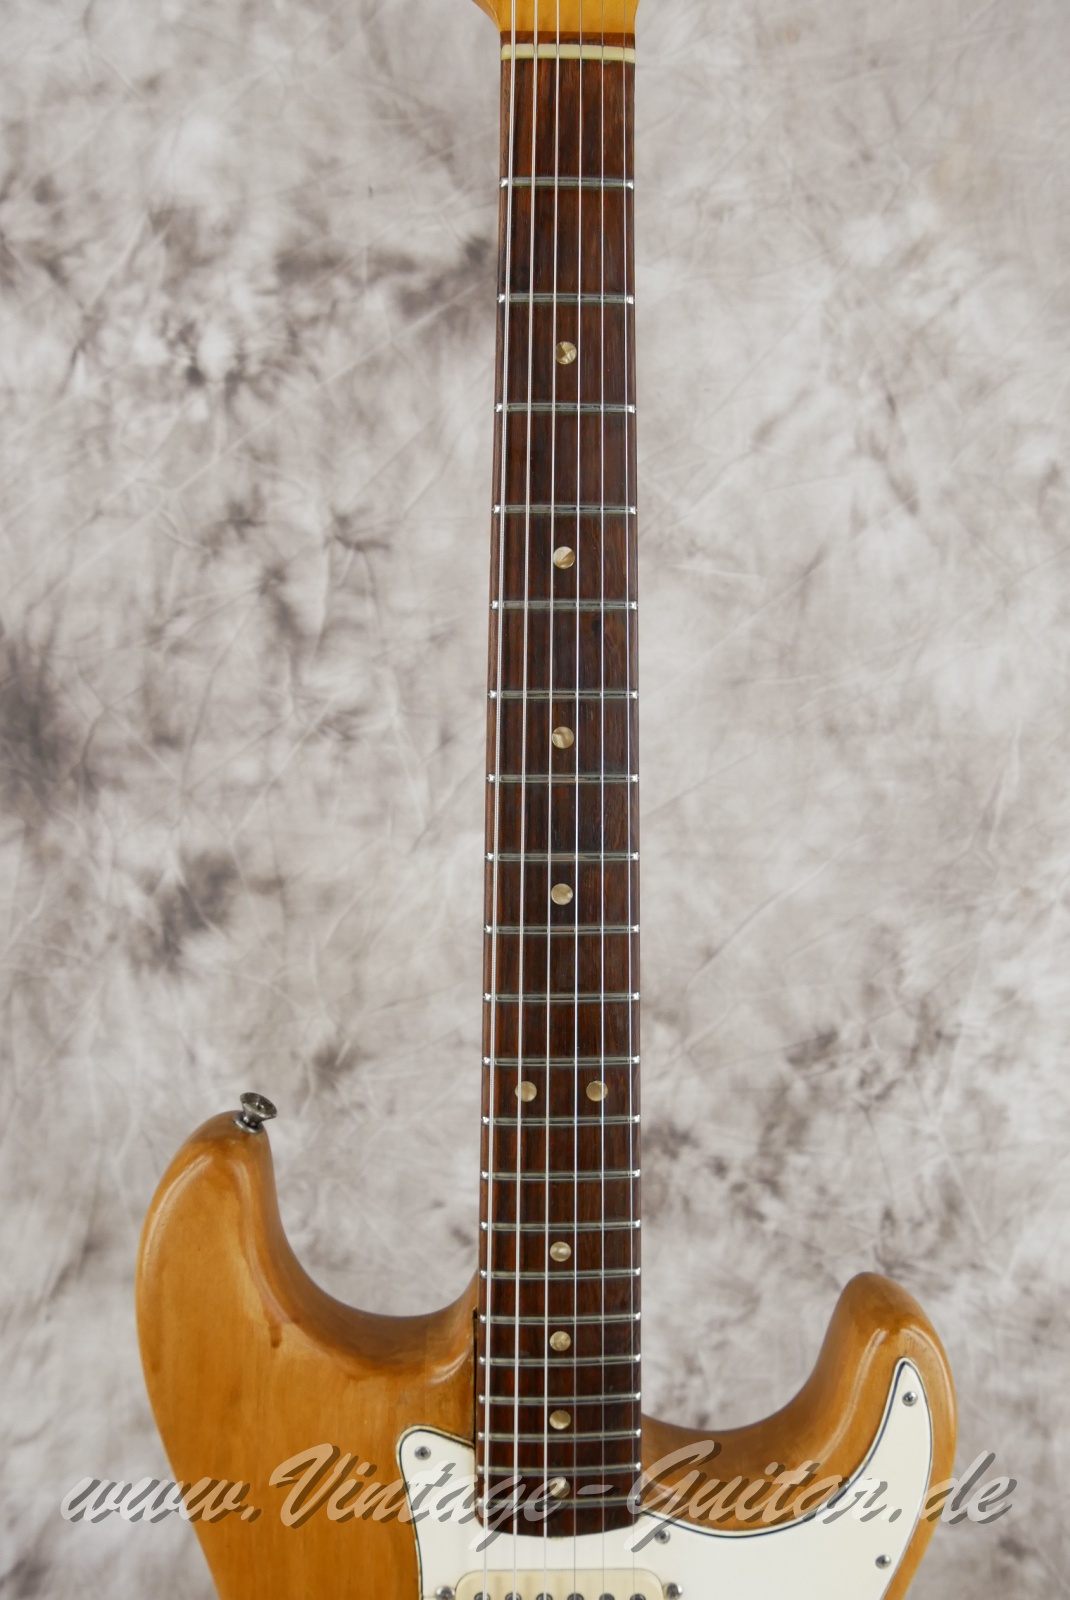 Fender_Stratocaster_body_stripped_1966-005.JPG